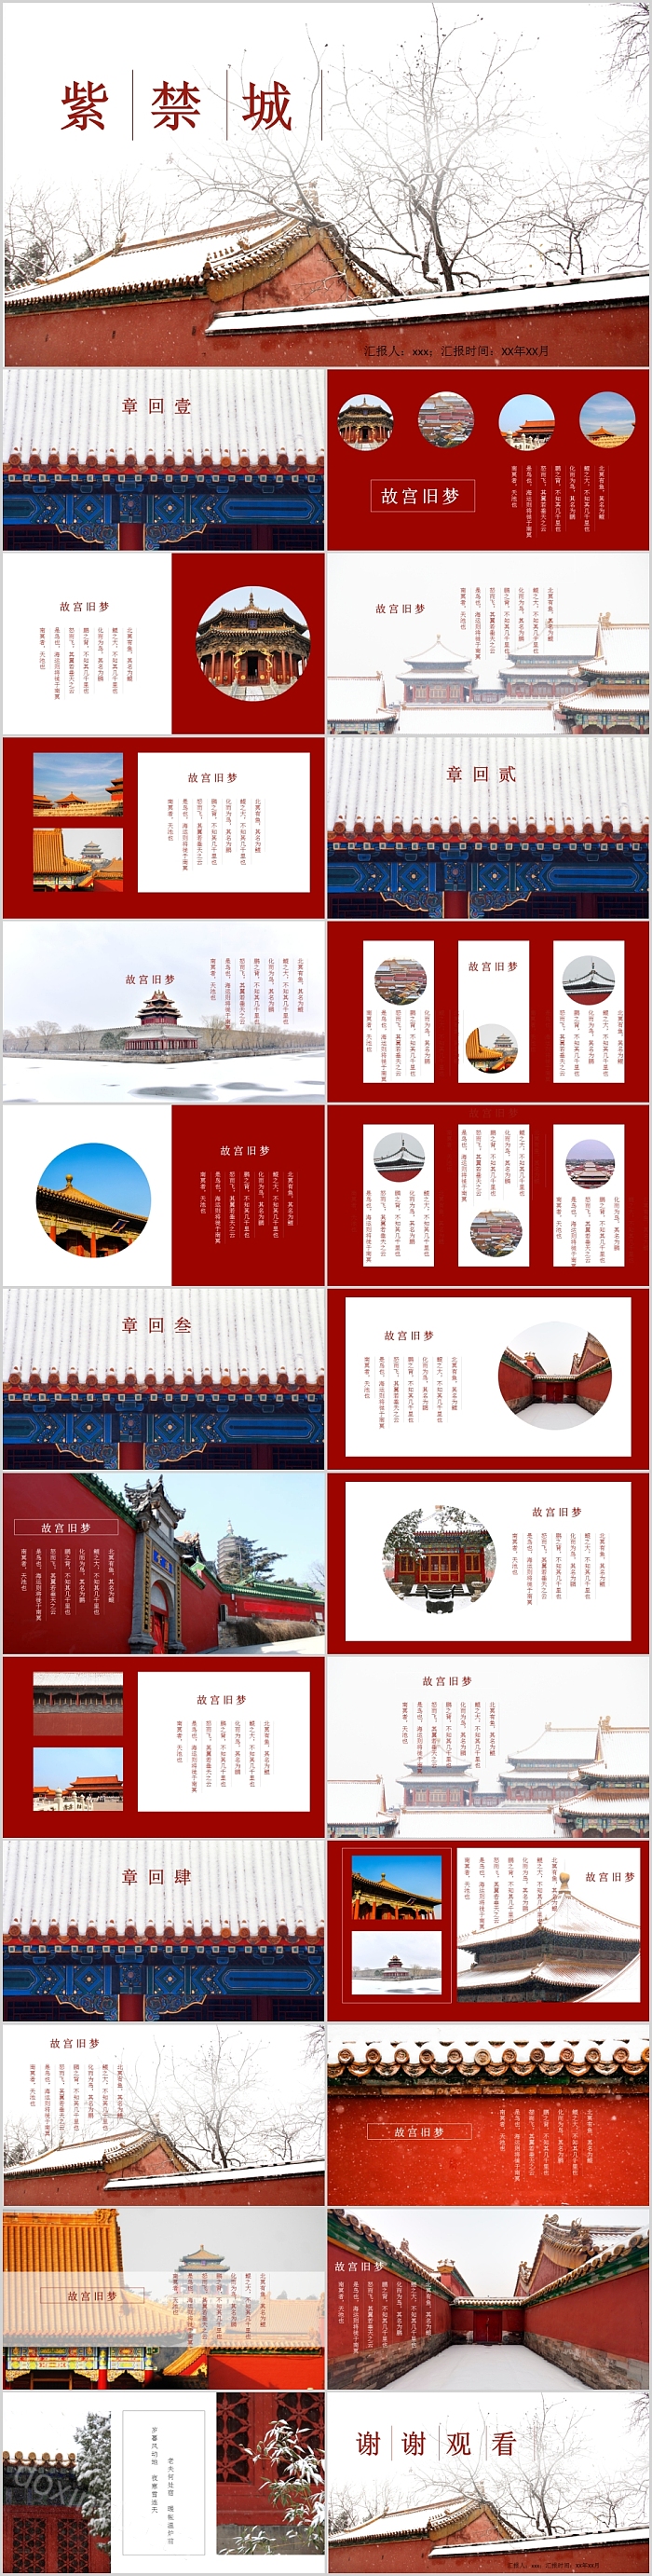 旅游宣传介绍紫荆城旅游画册PPT模板